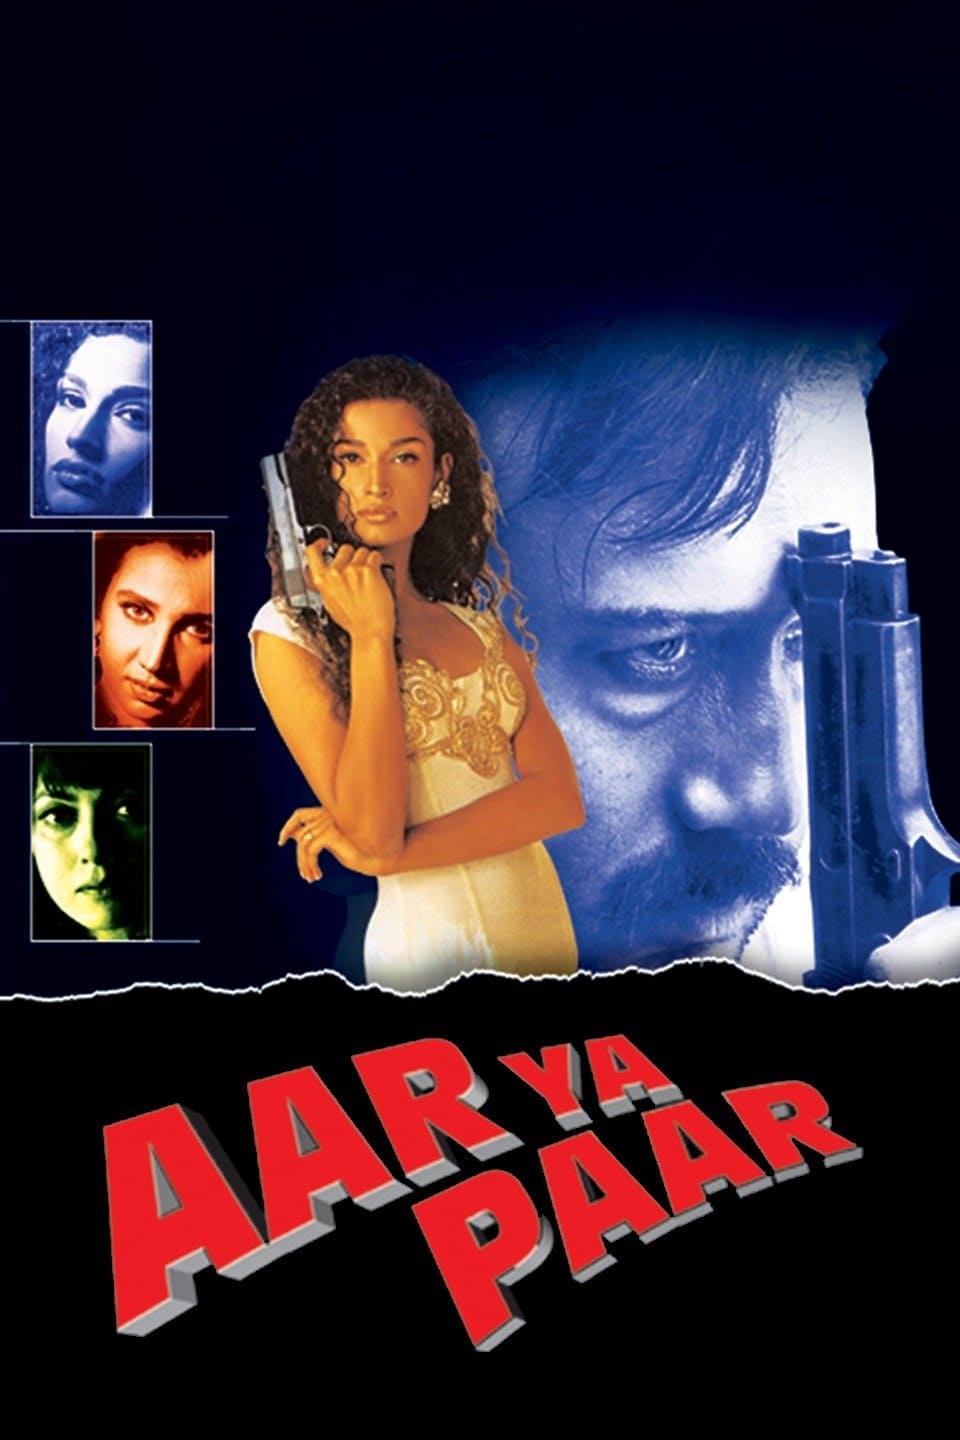 Aar Ya Paar (1997)